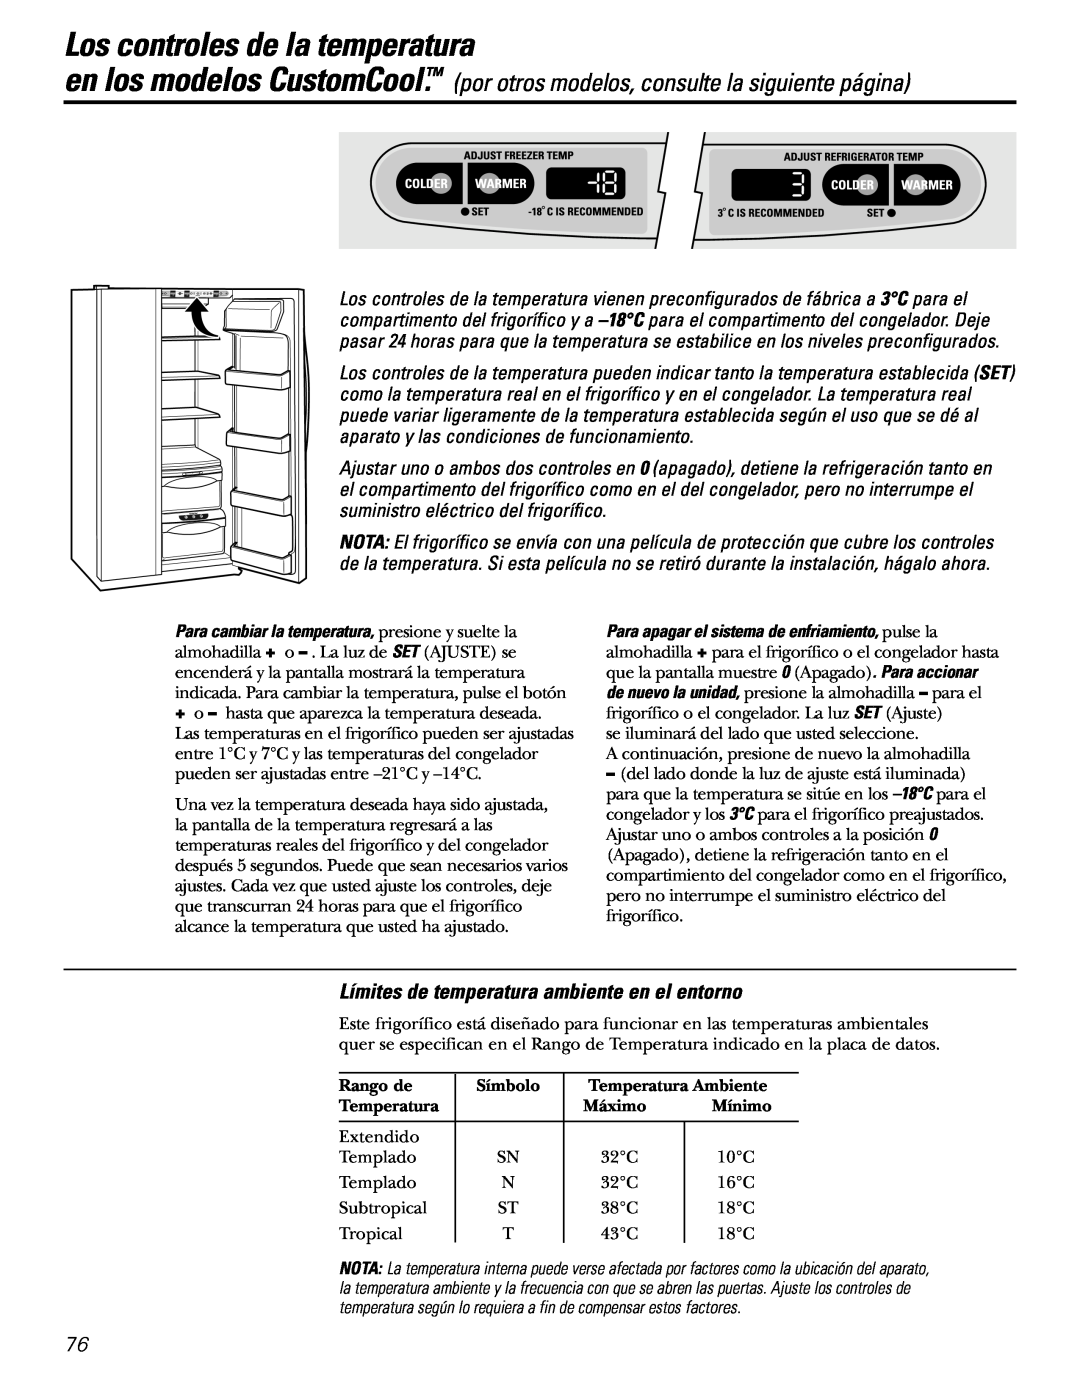 GE 21, 23, 25, 27, 29 installation instructions Los controles de la temperatura en los modelos CustomCool 